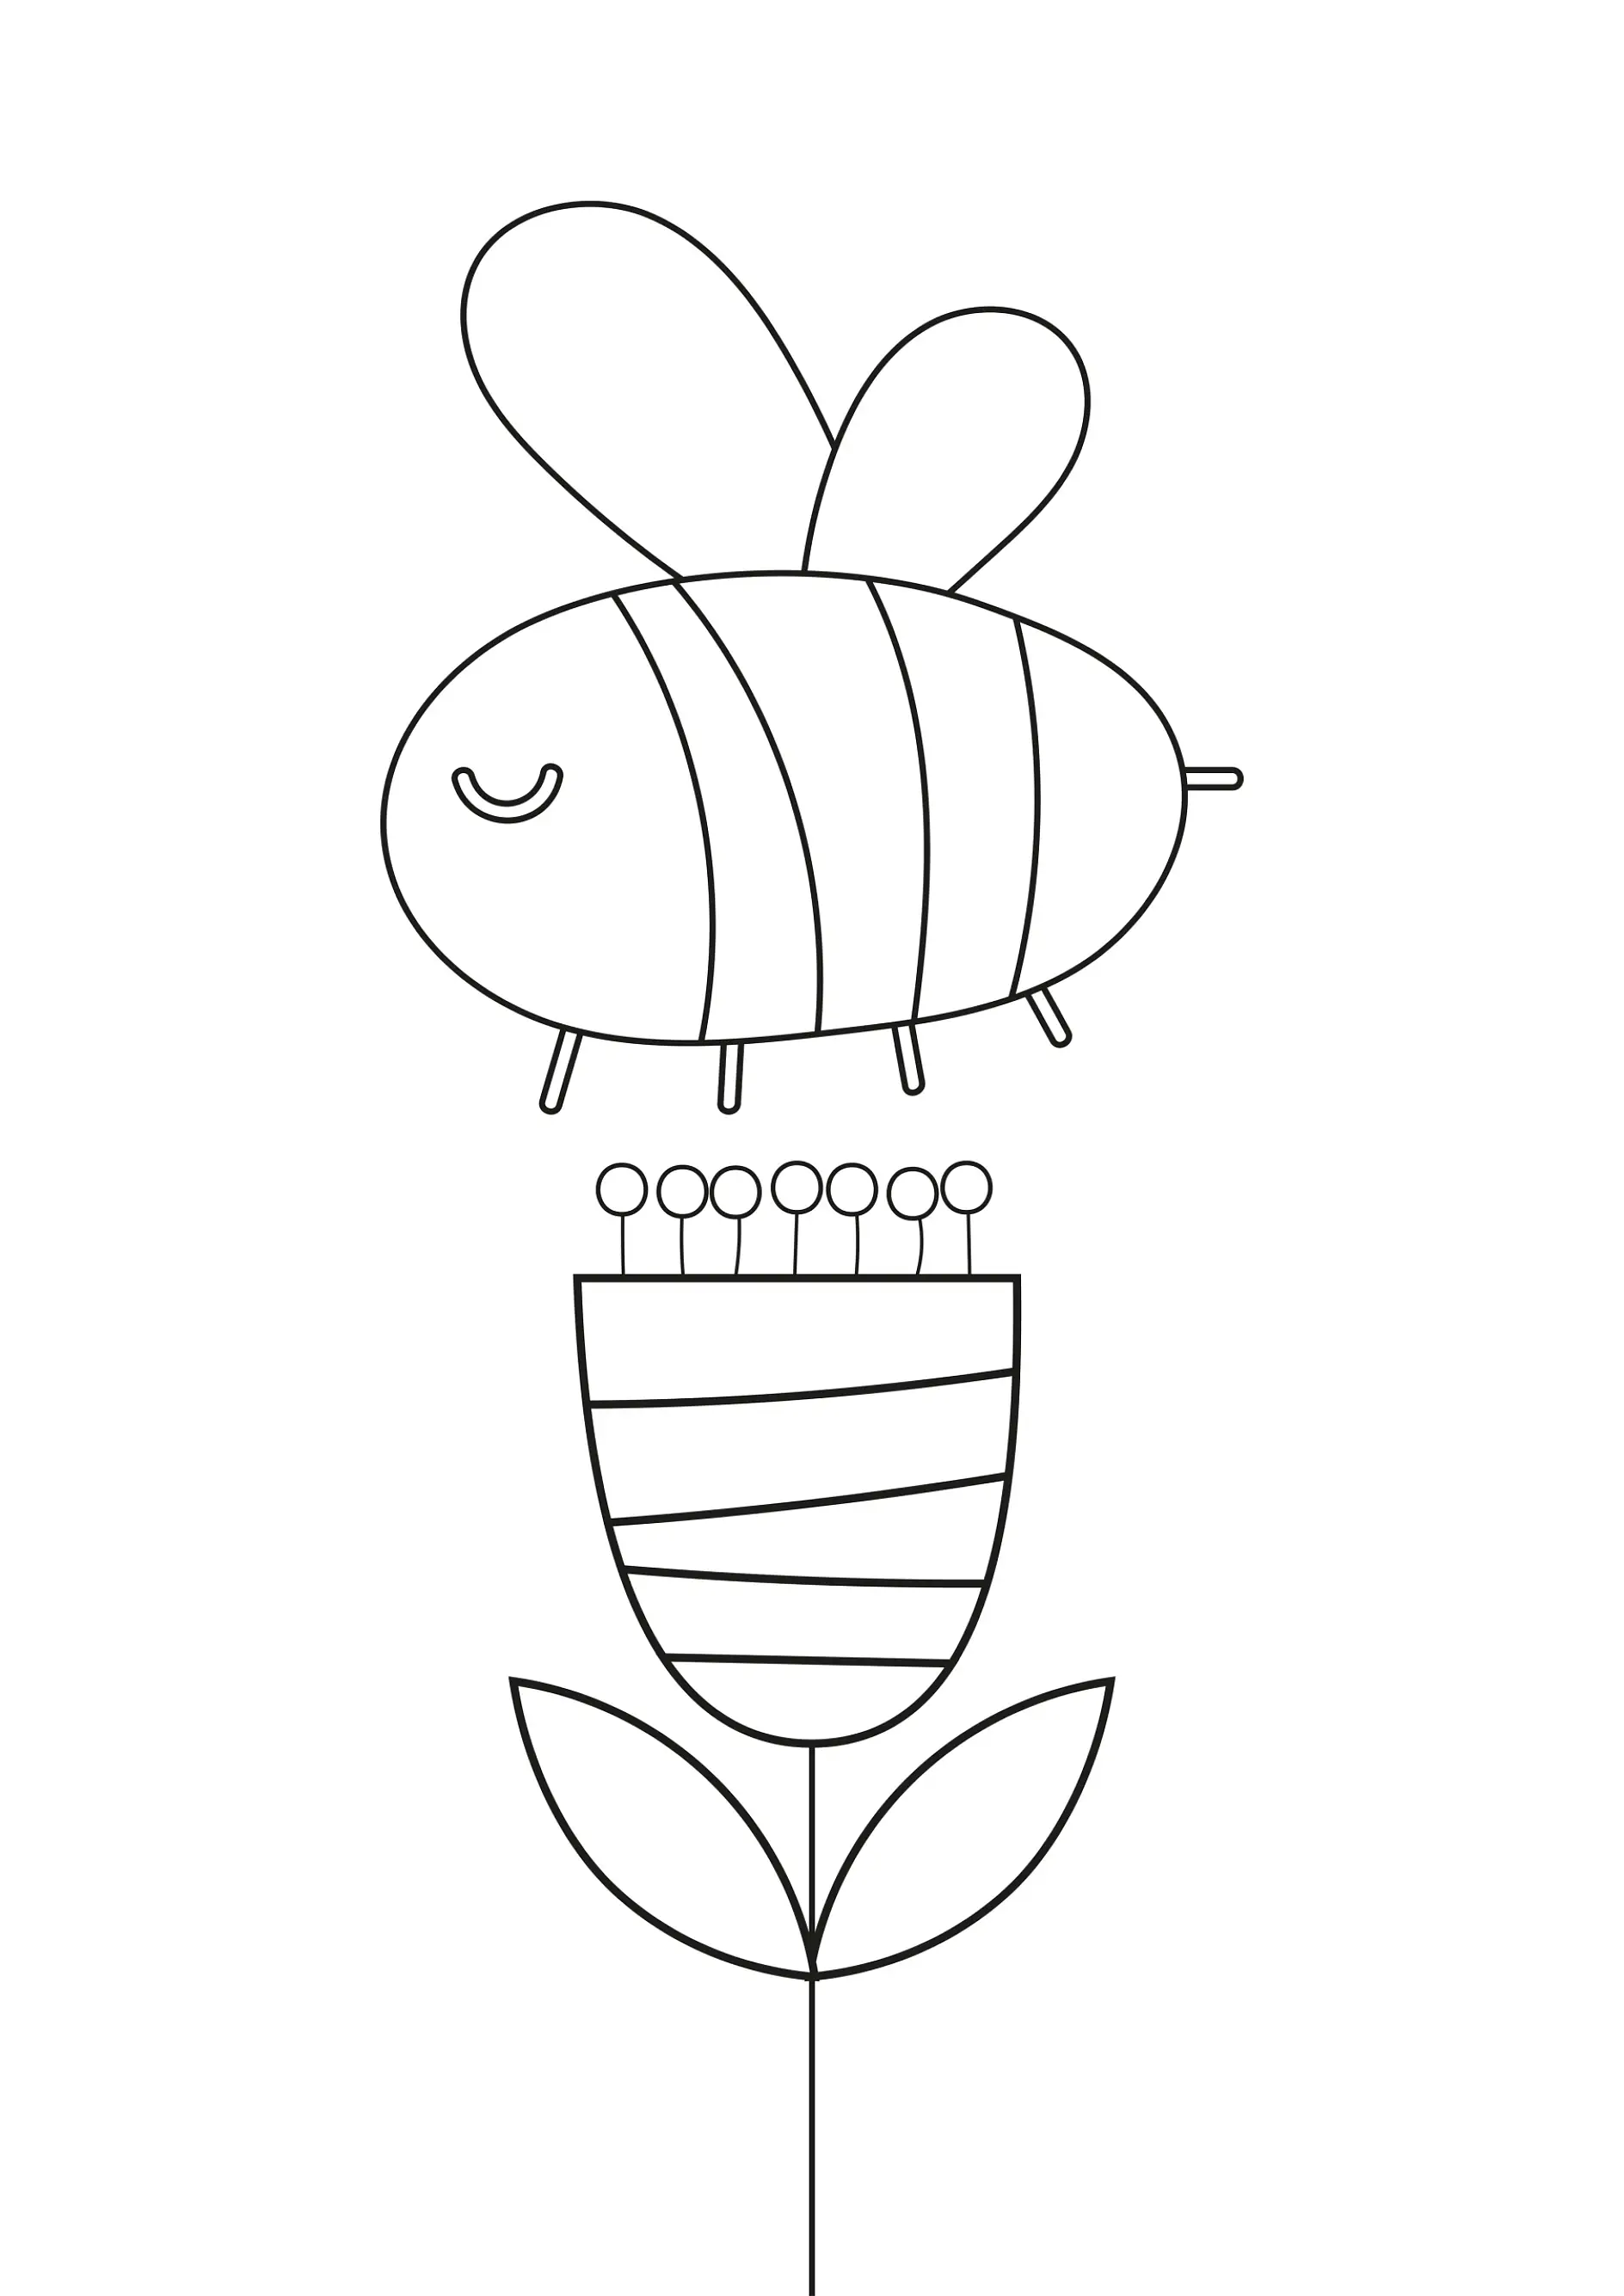 Ausmalbild Biene schwebt über einer Blume mit einfachen Linien